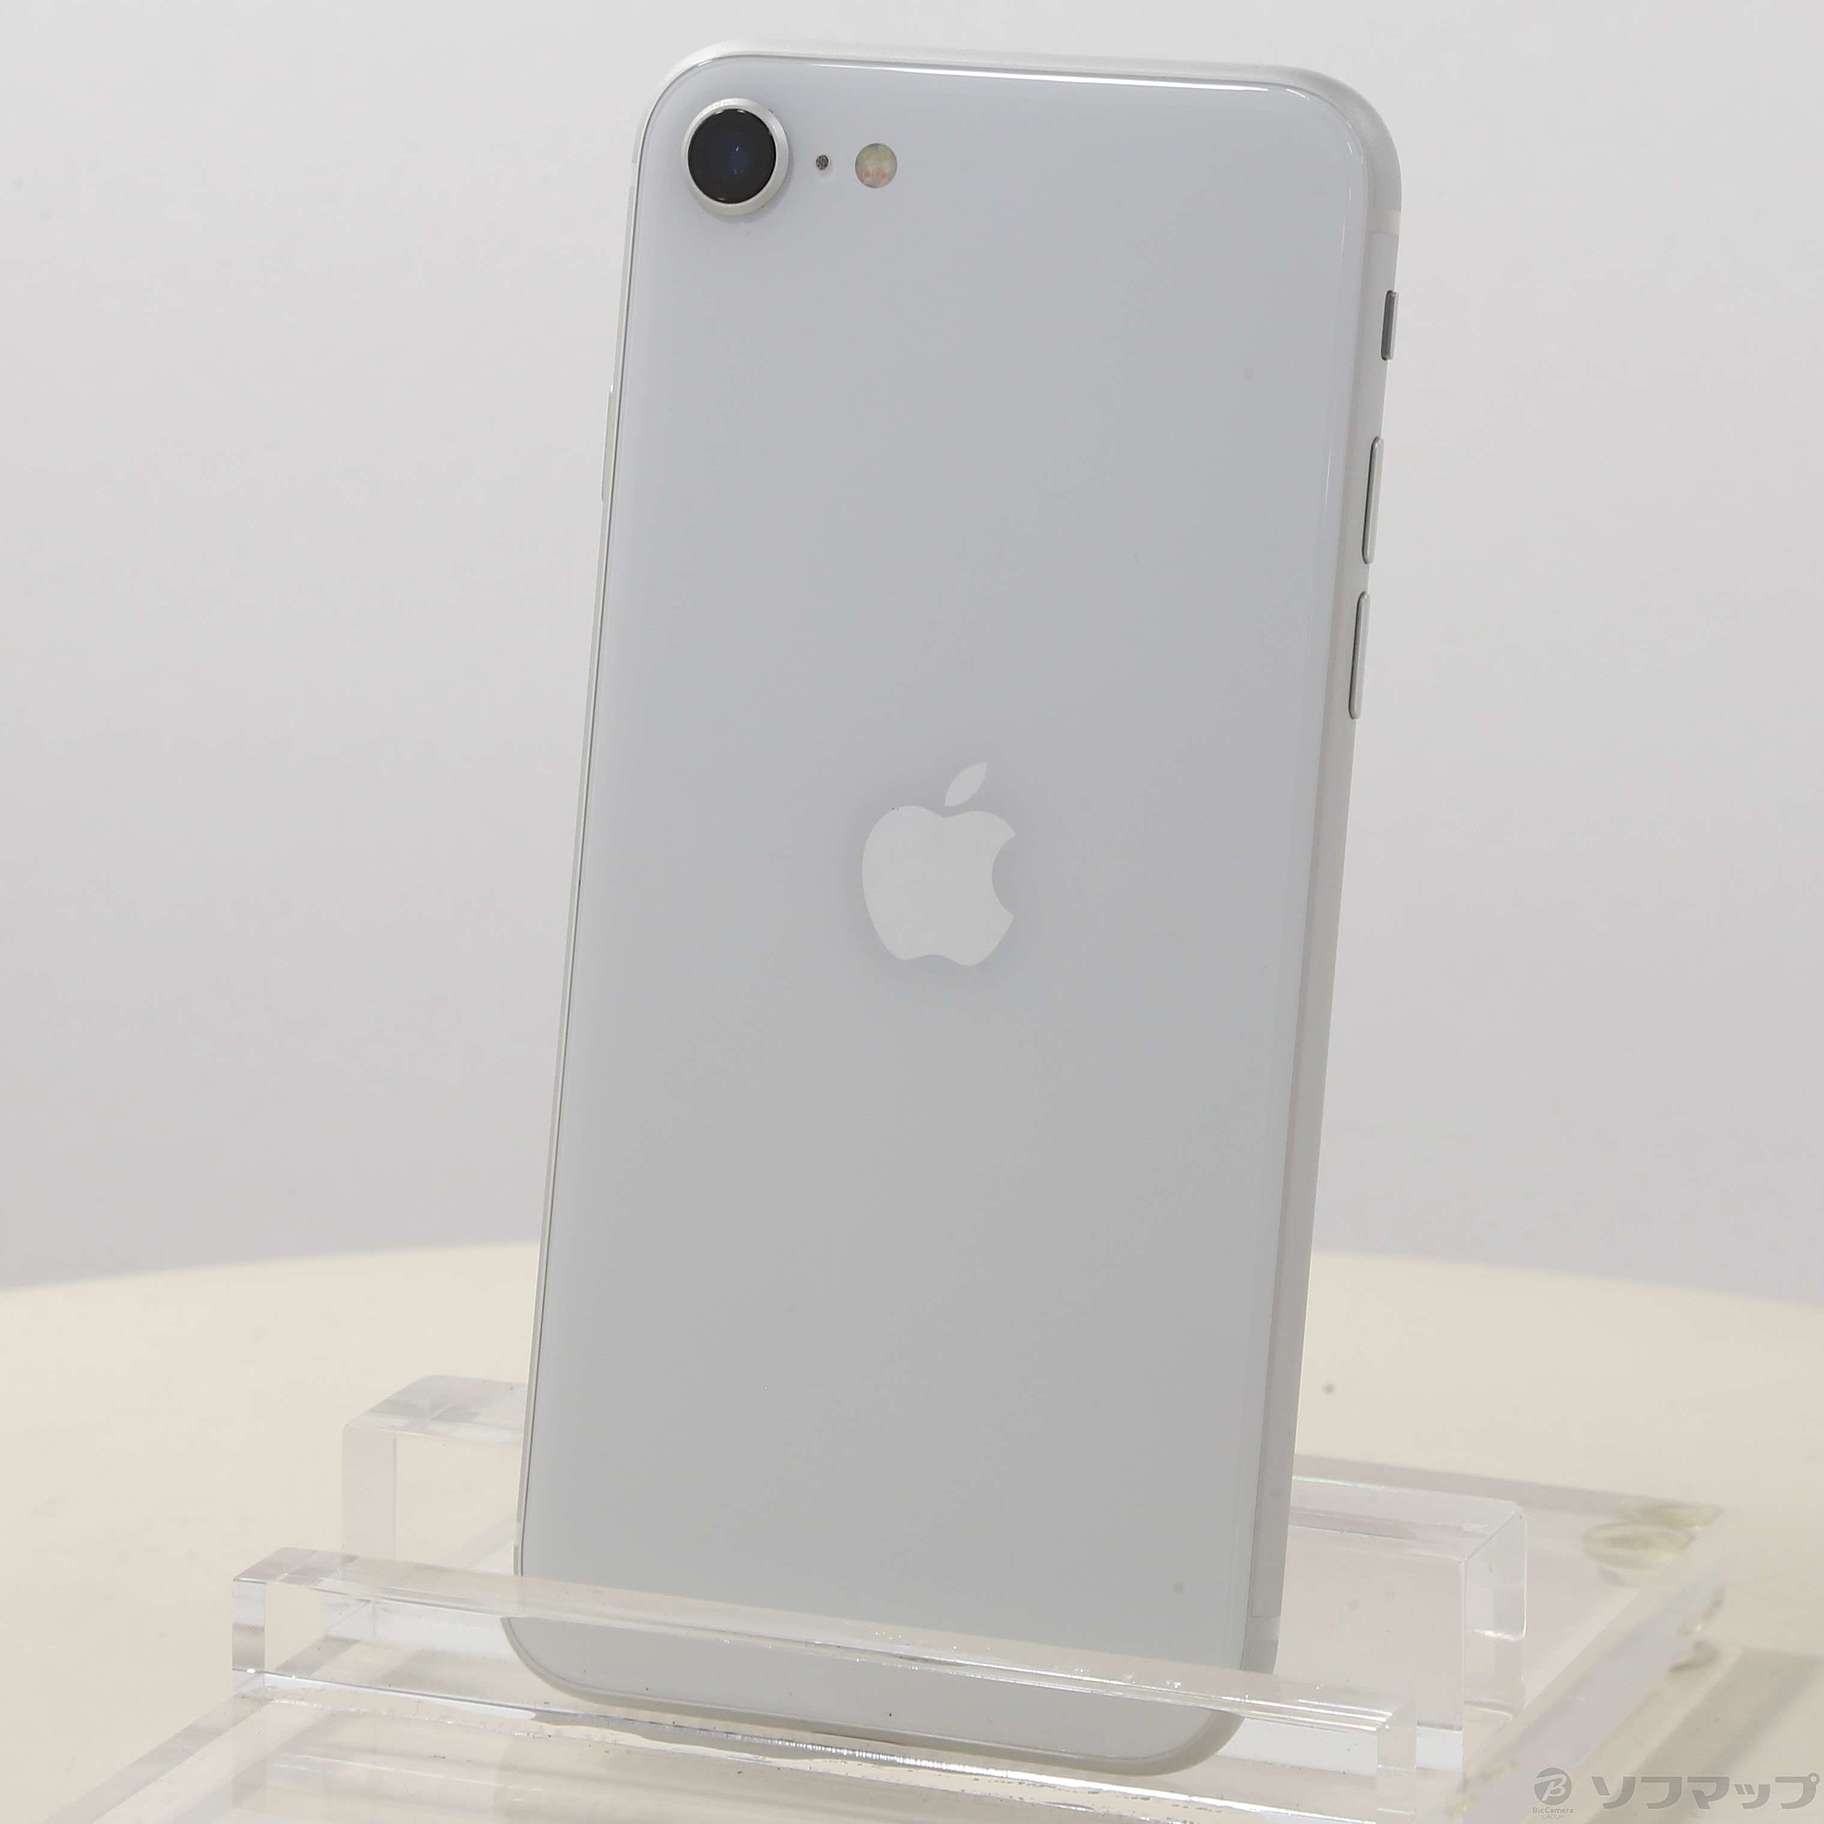 iPhone SE 第2世代 256GB ホワイト SIMフリー